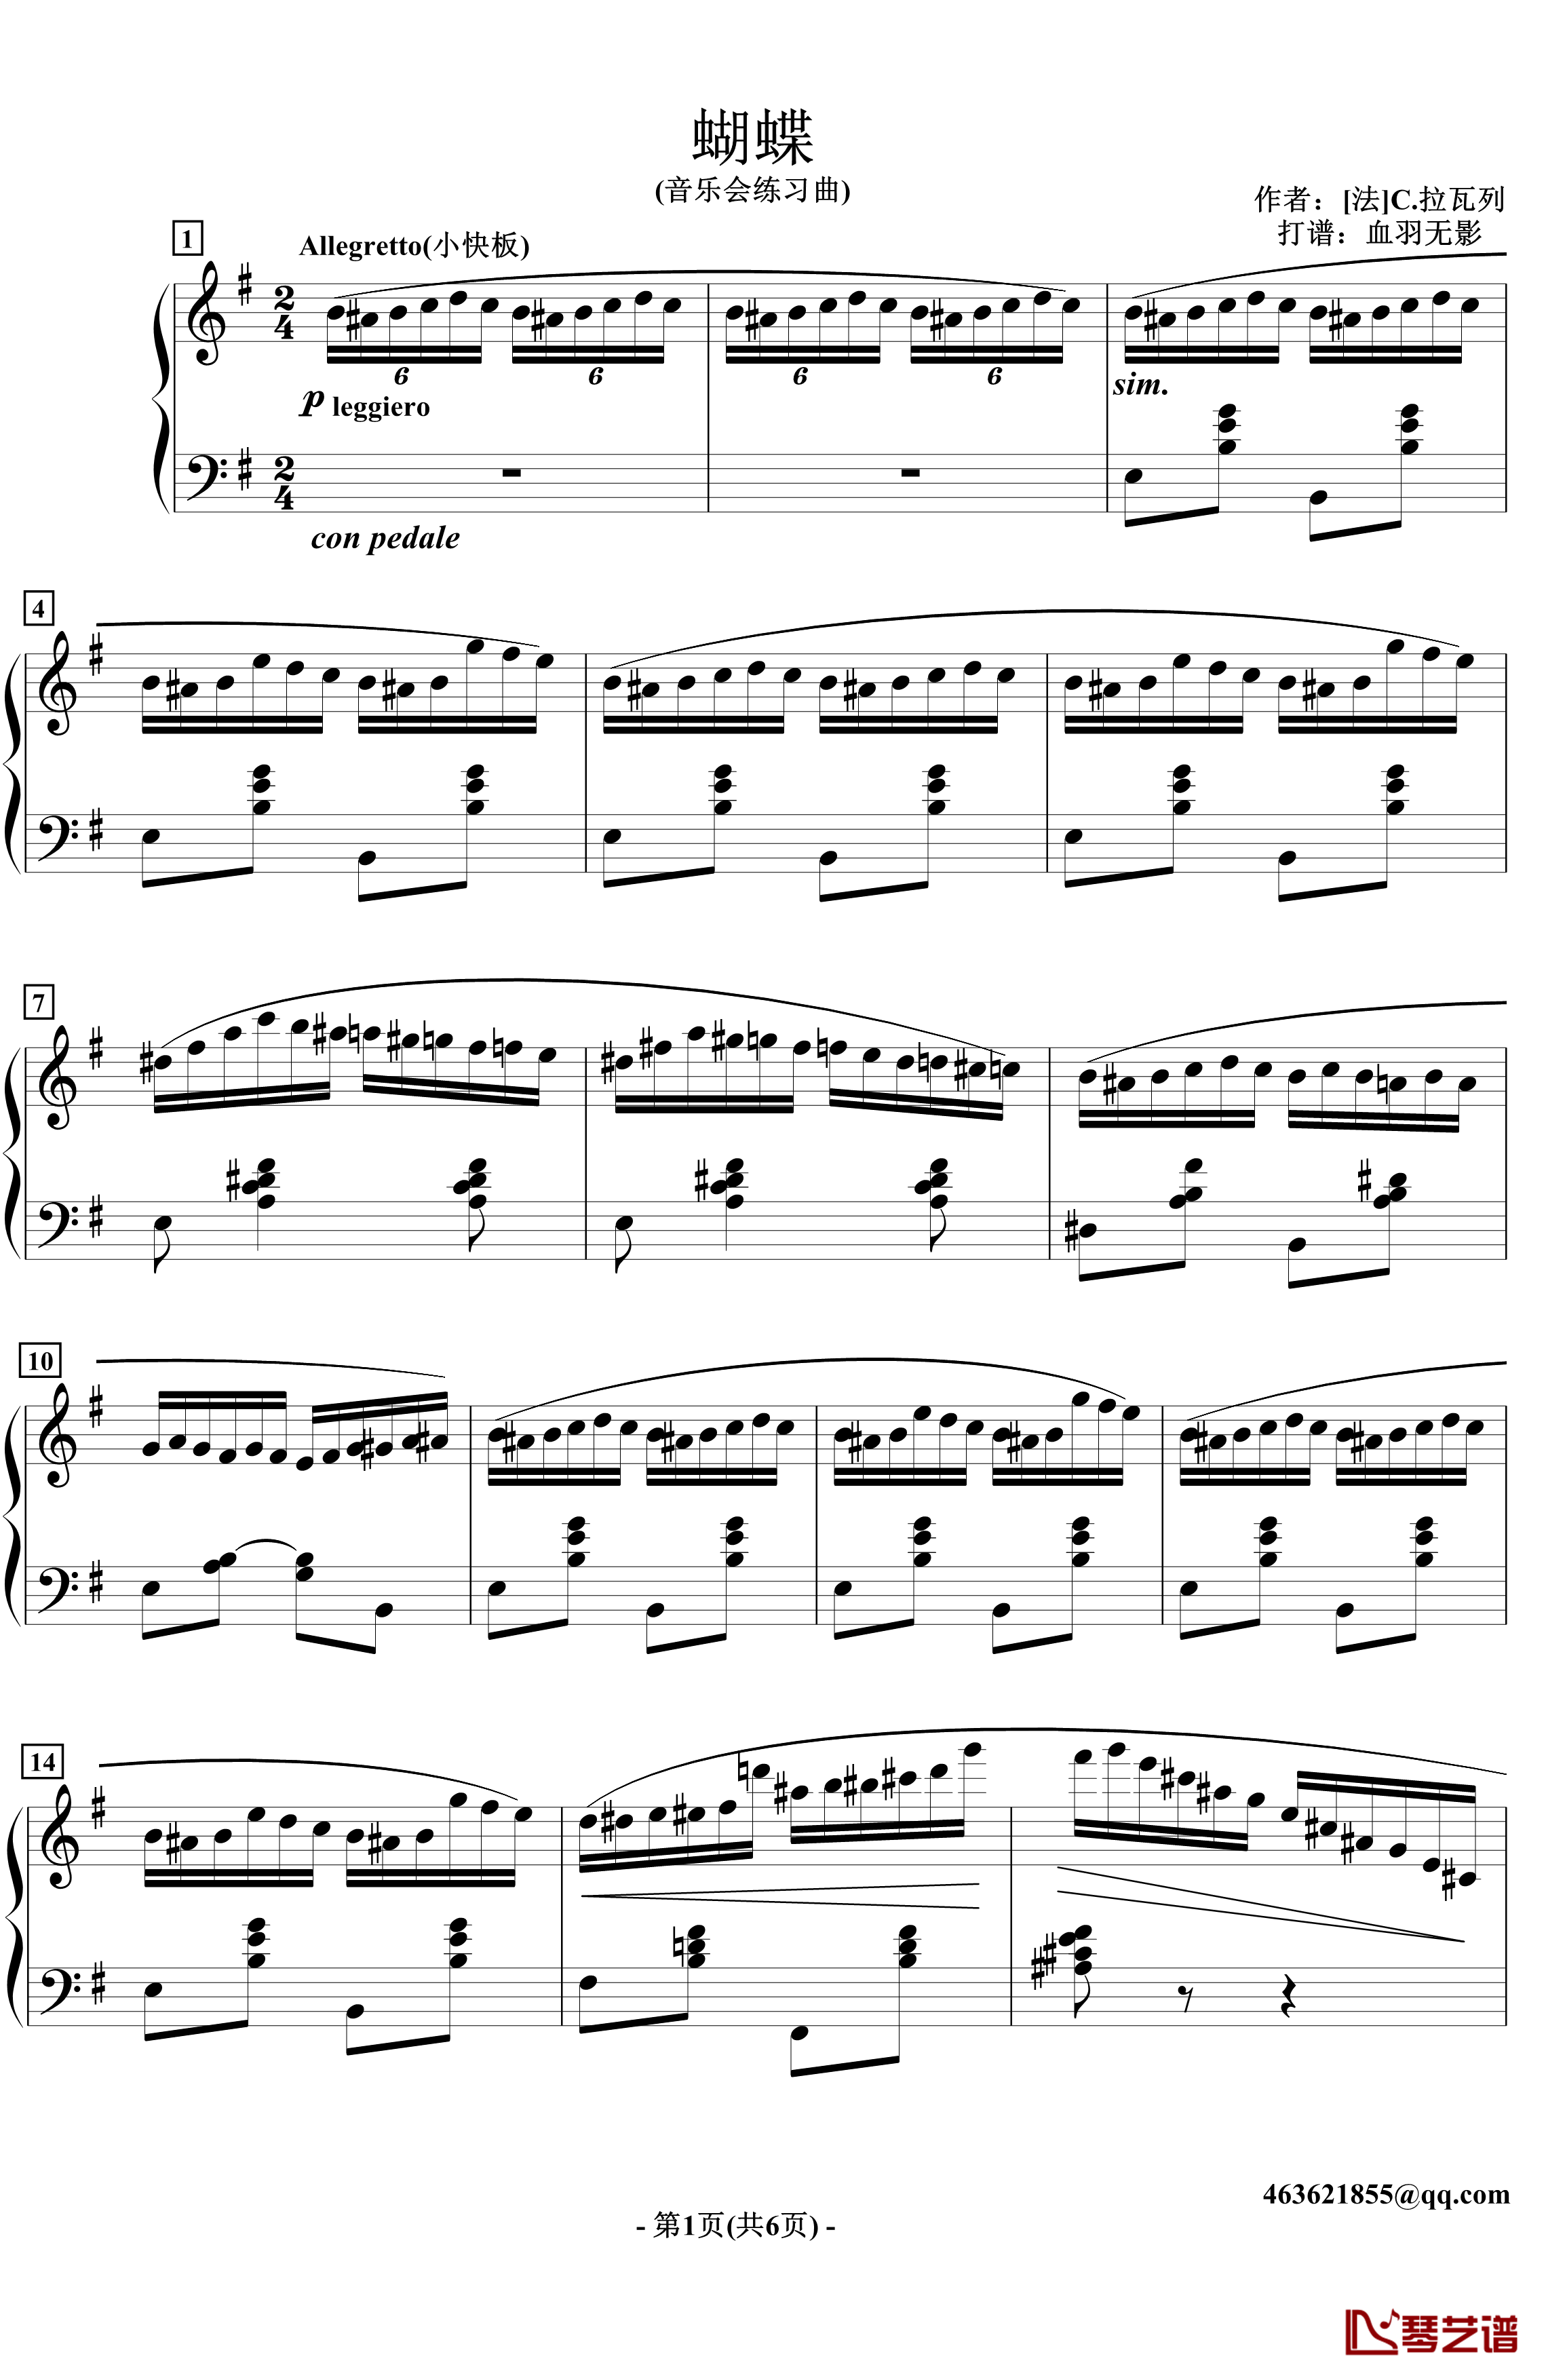 蝴蝶钢琴谱-音乐会练习曲-拉瓦列1